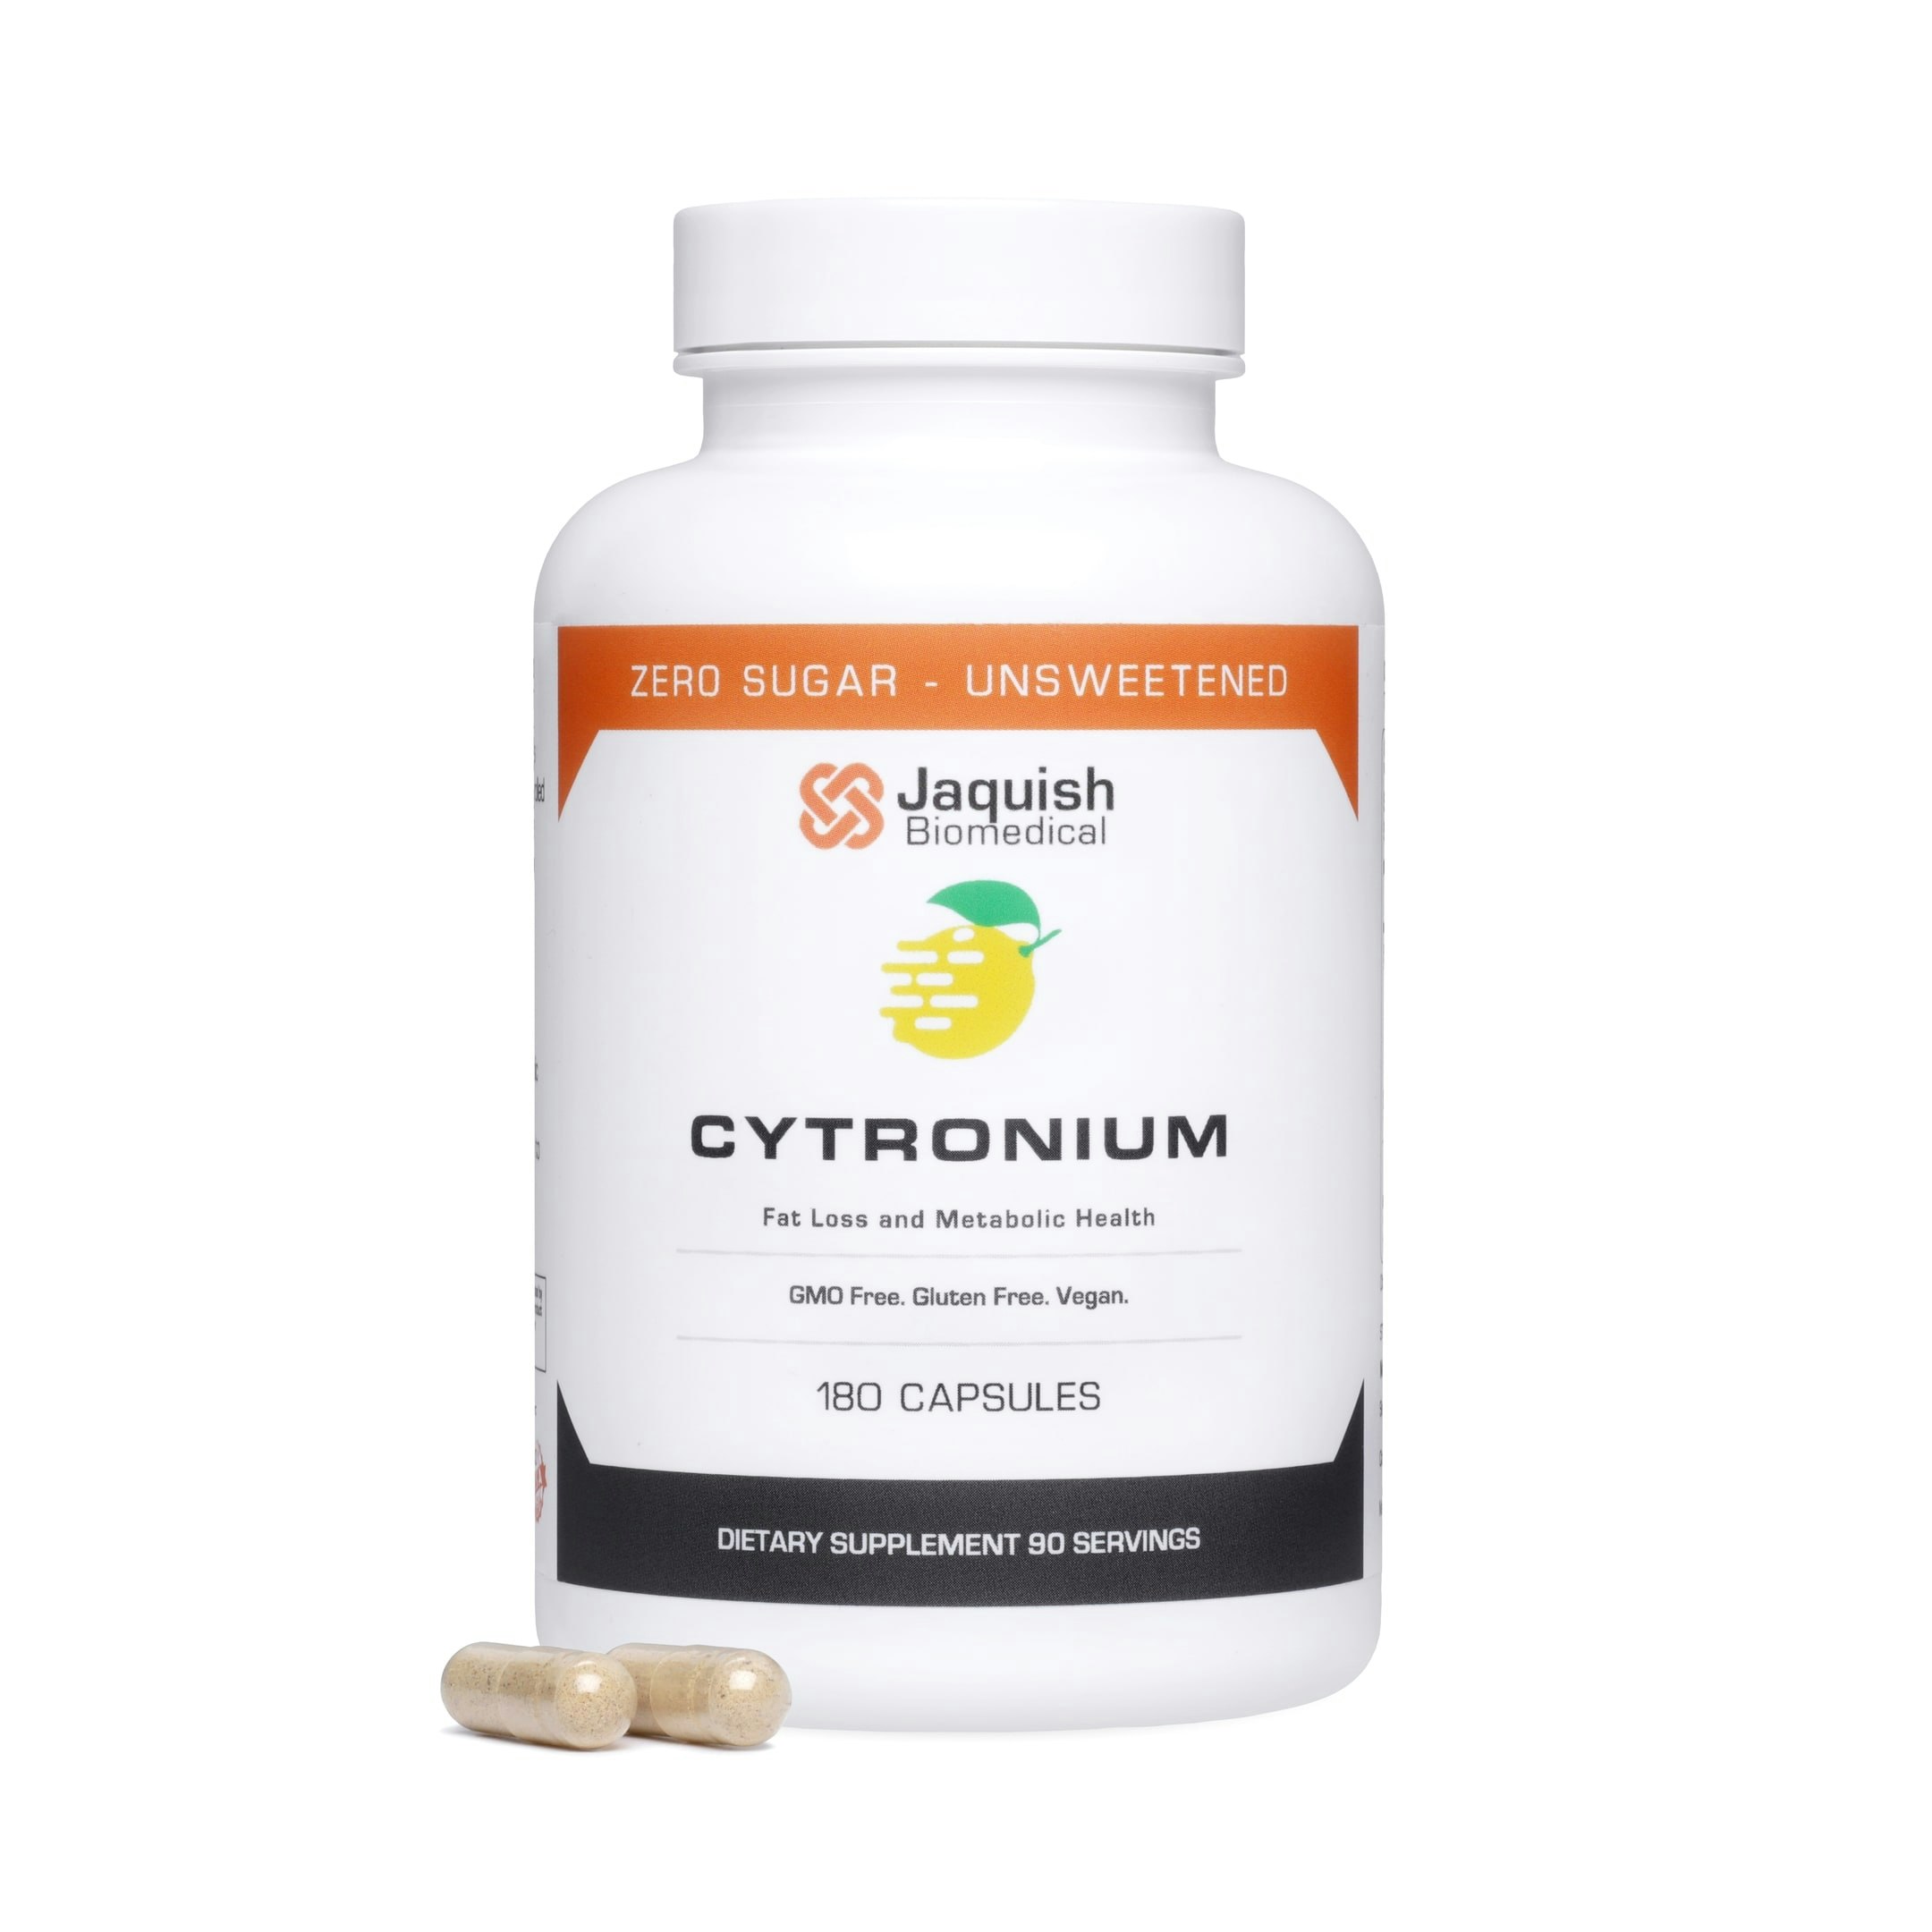 Cytronium